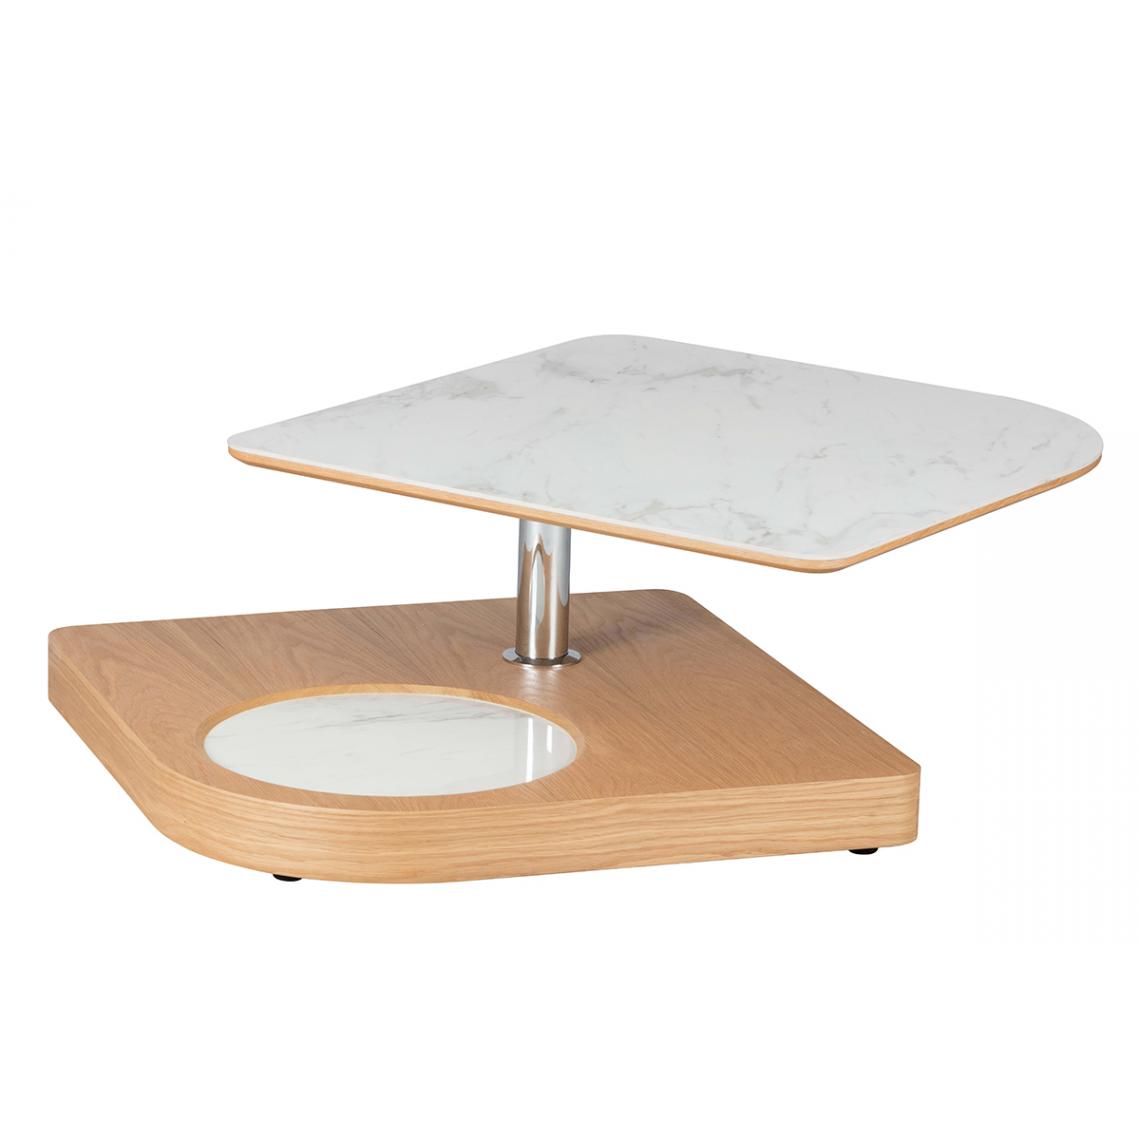 Pegane - Table basse en MDF /céramique coloris frêne naturel - Longueur 80-105 x largeur 80 x hauteur 36 cm - Tables basses